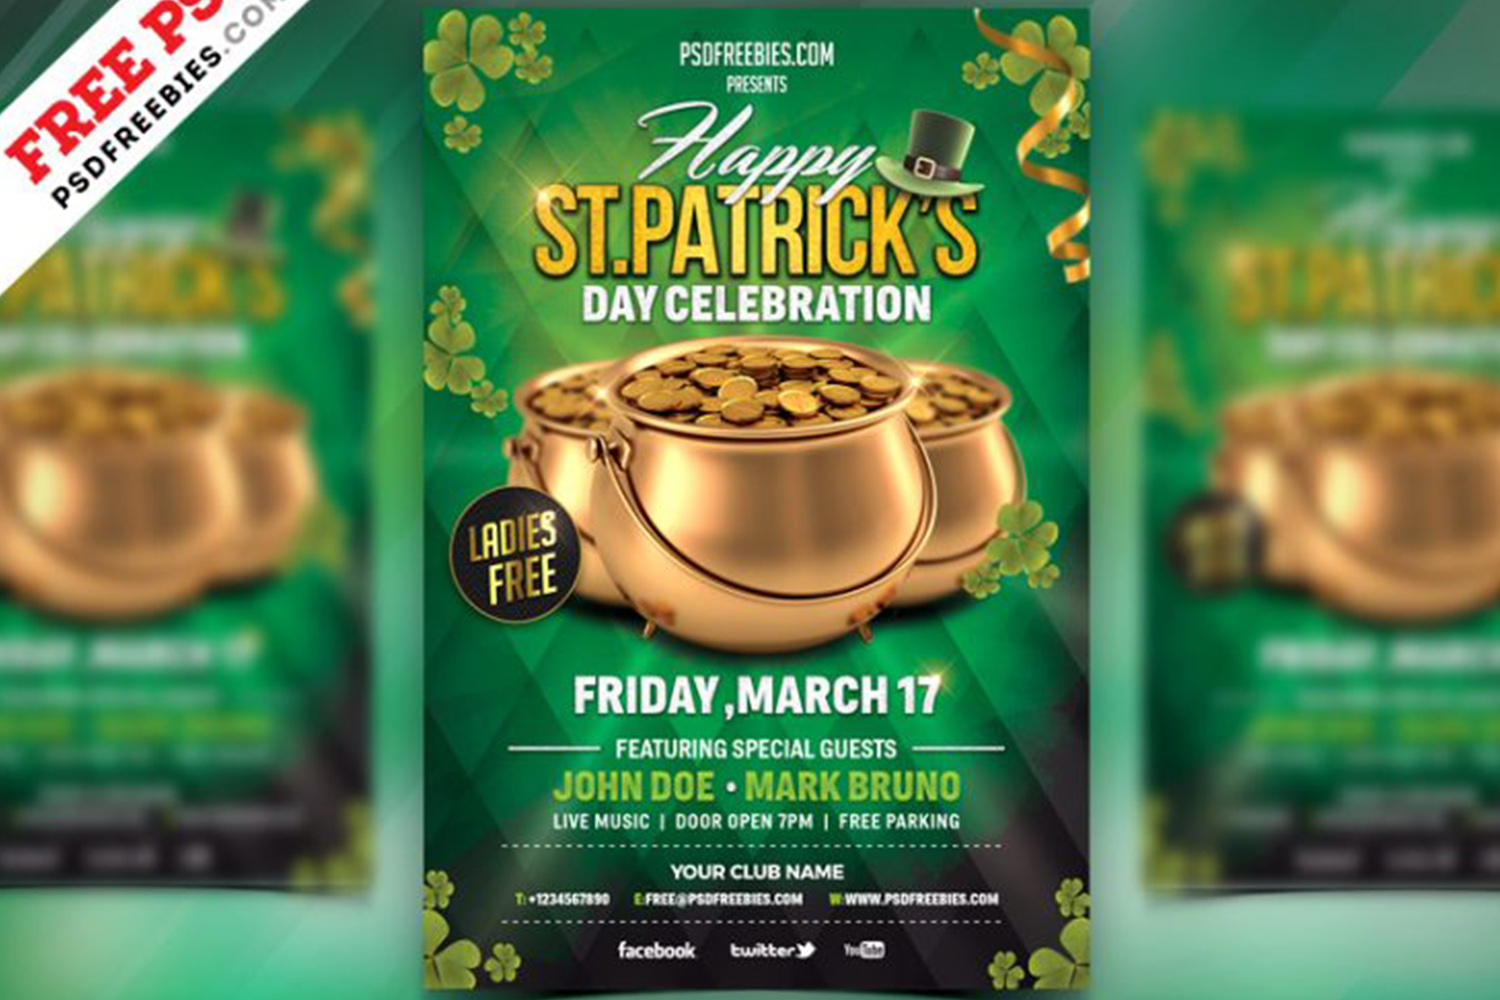 St. Patrick’s Day Celebration Flyer PSD Free Download